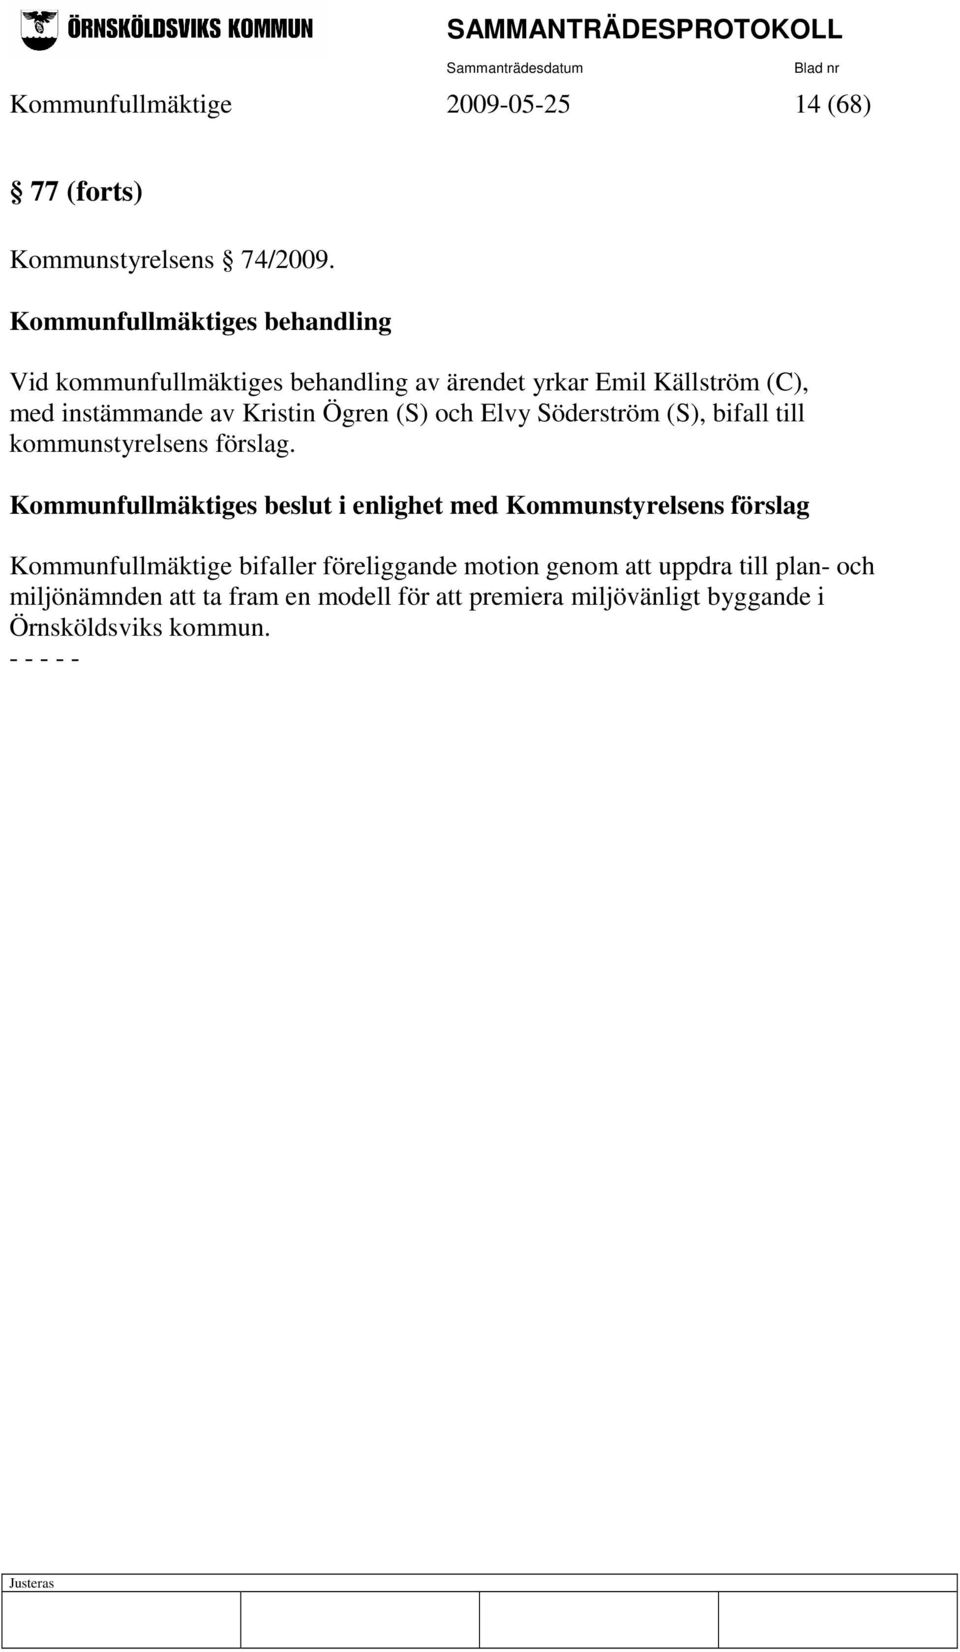 Ögren (S) och Elvy Söderström (S), bifall till kommunstyrelsens förslag.